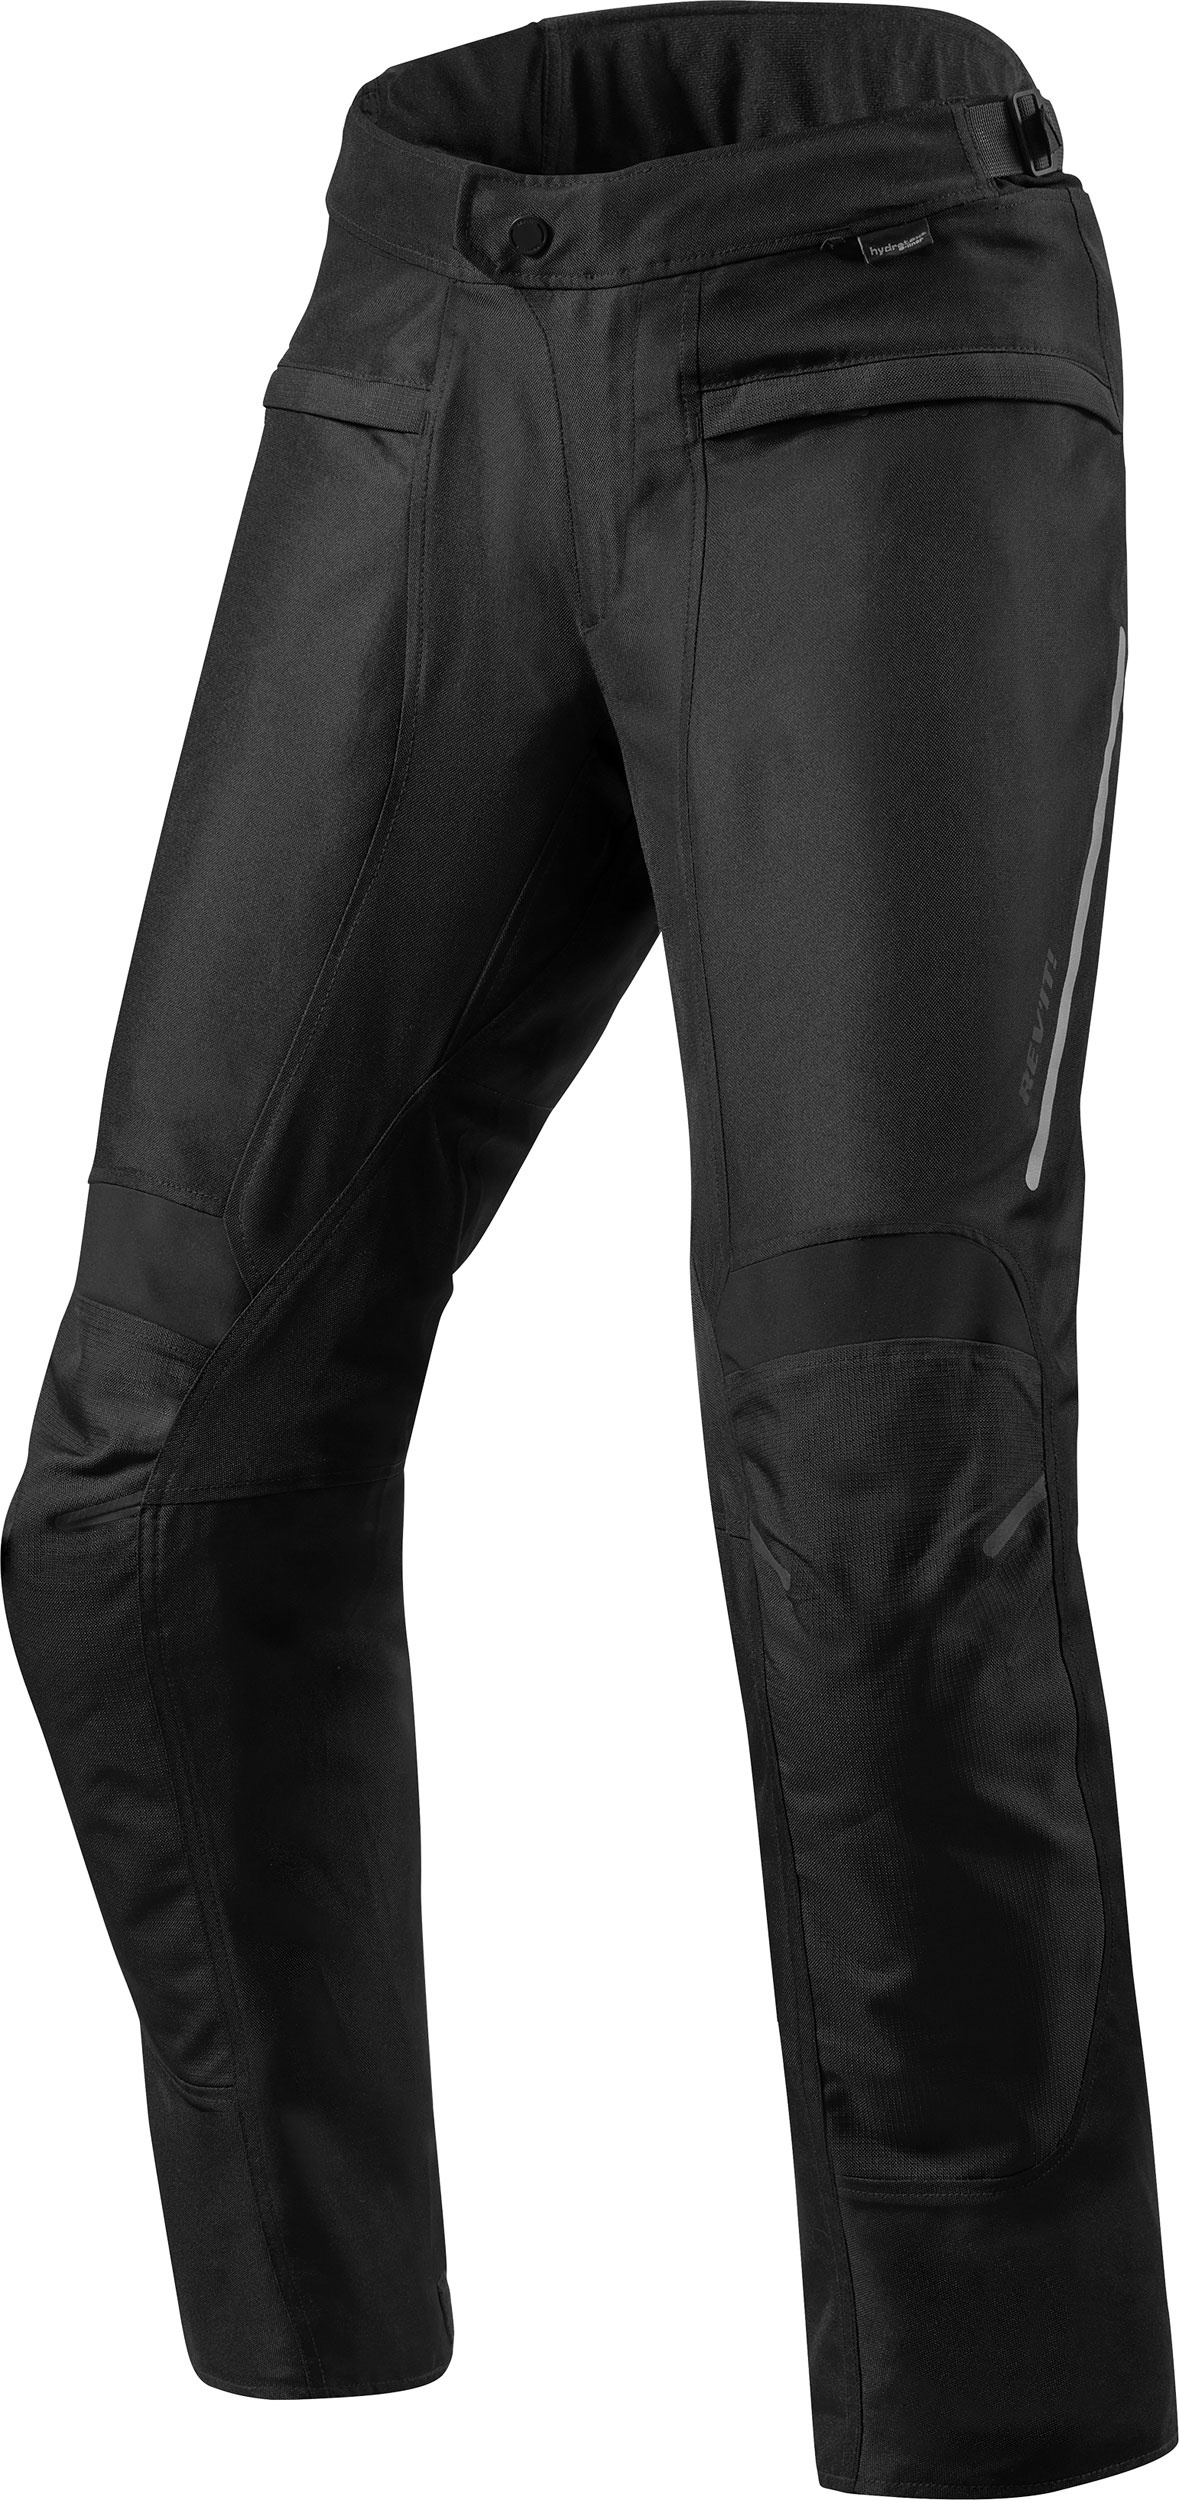 Revit Factor 4, pantalon textile - Noir - M